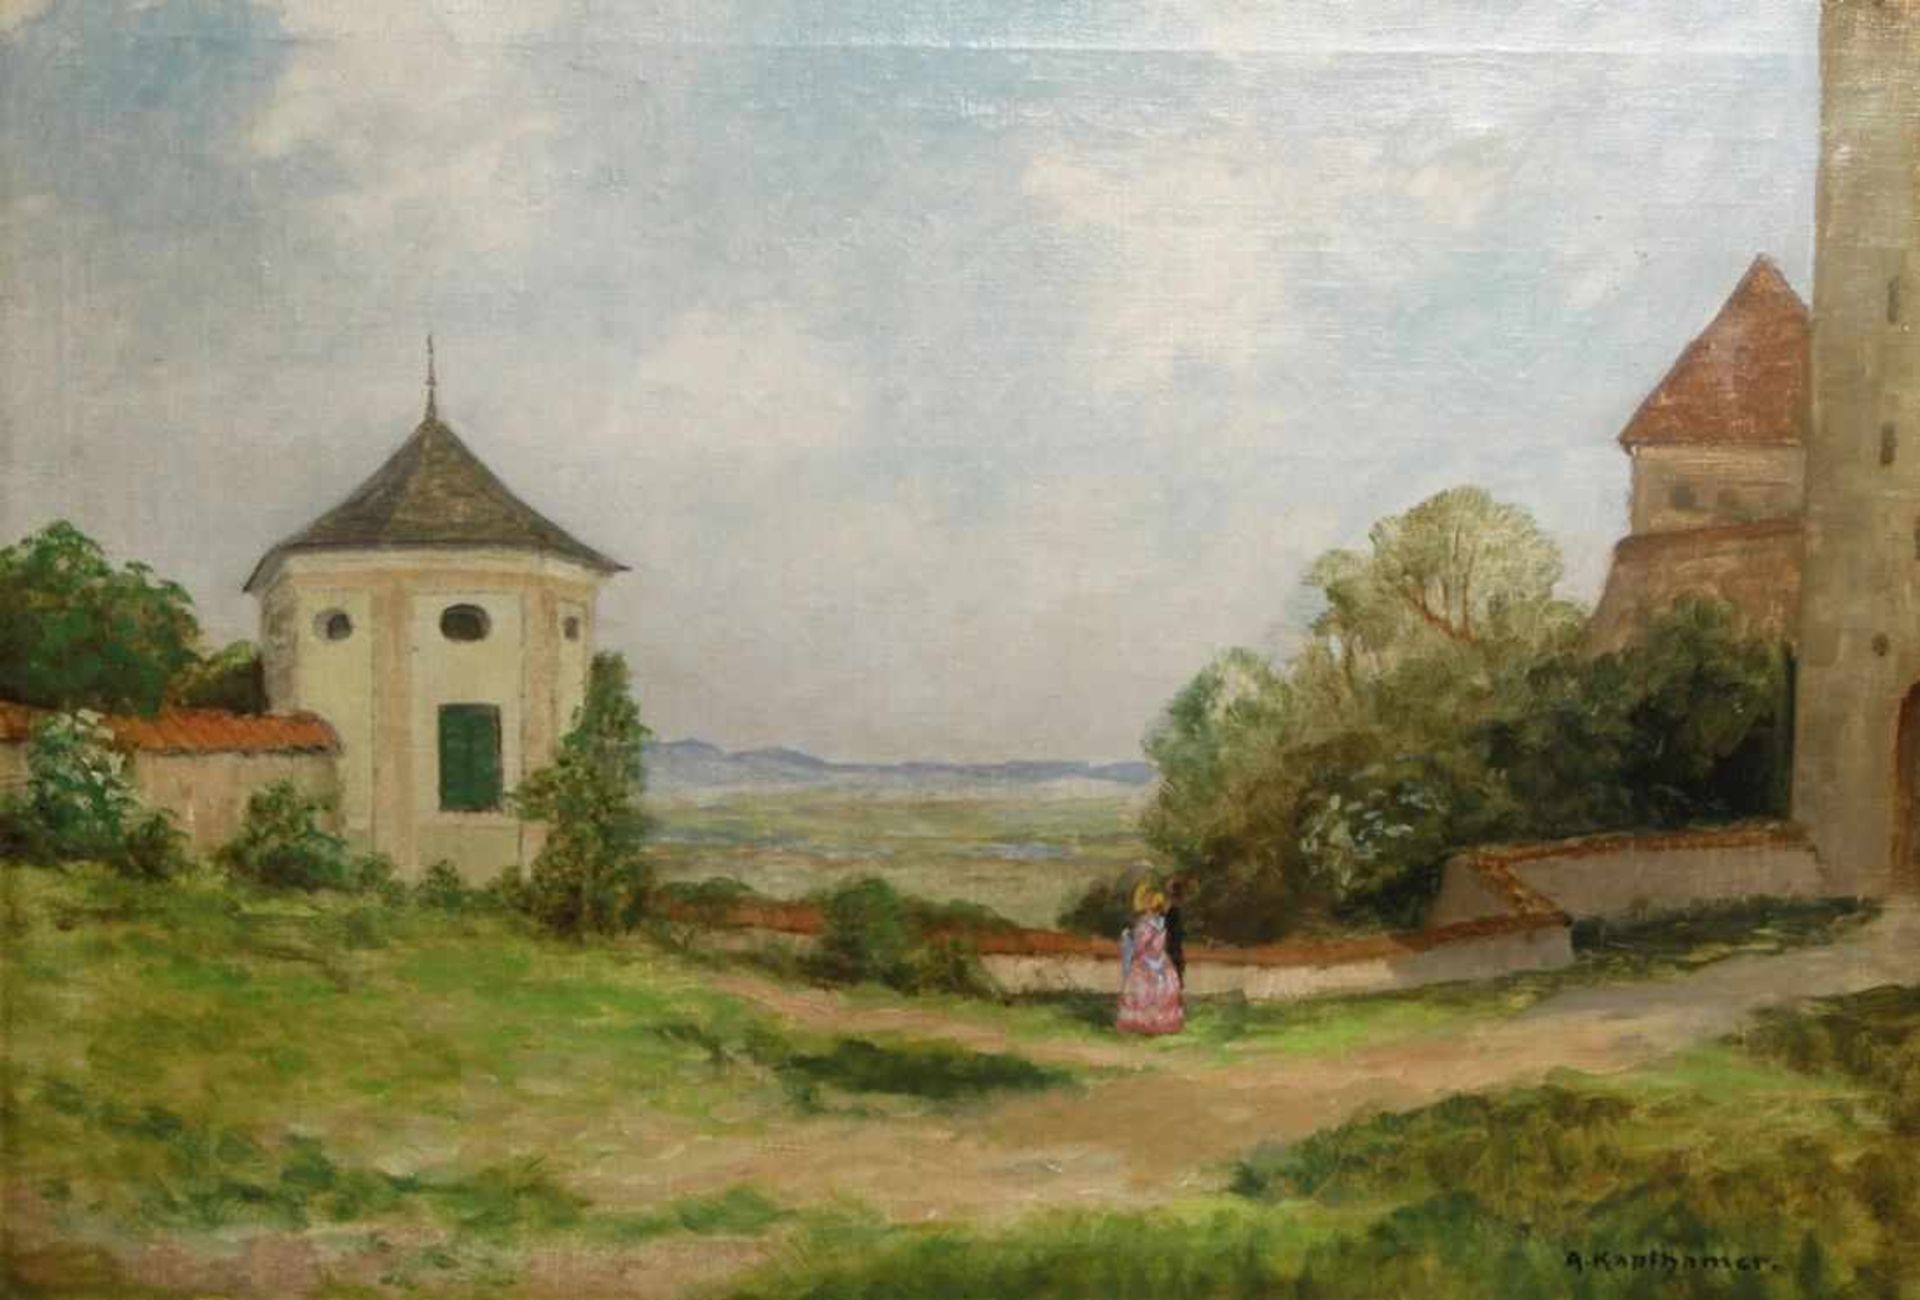 Kapfhamer, Adolf, geb. 1867 in München. "Landschaft mit Burg", sign., Öl/Lw., 50 x 72 cm- - -20.00 %